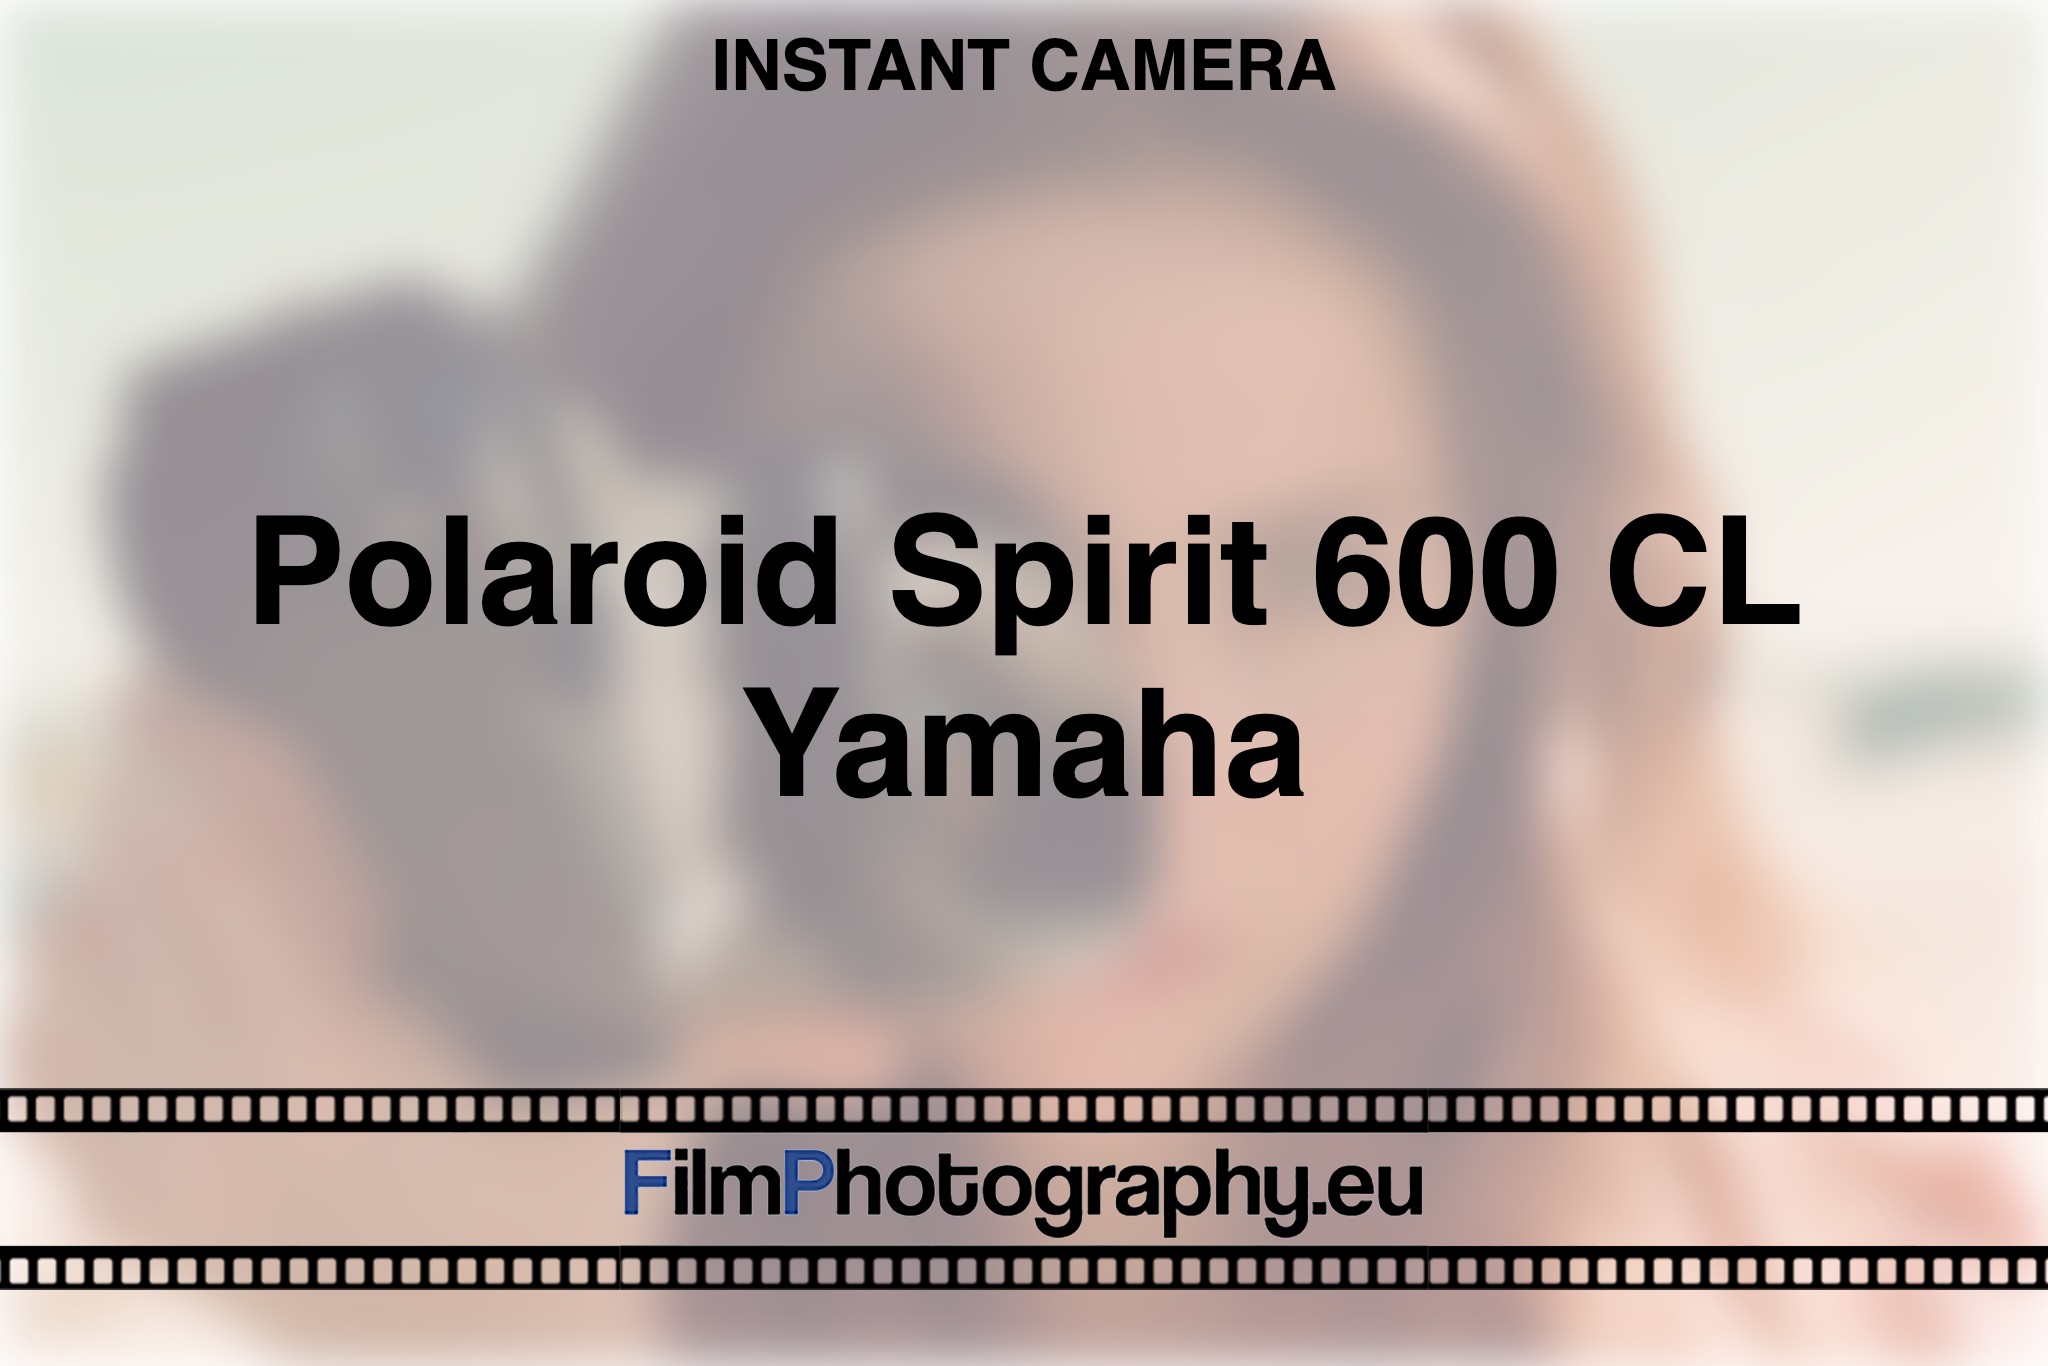 polaroid-spirit-600-cl-yamaha-instant-camera-bnv